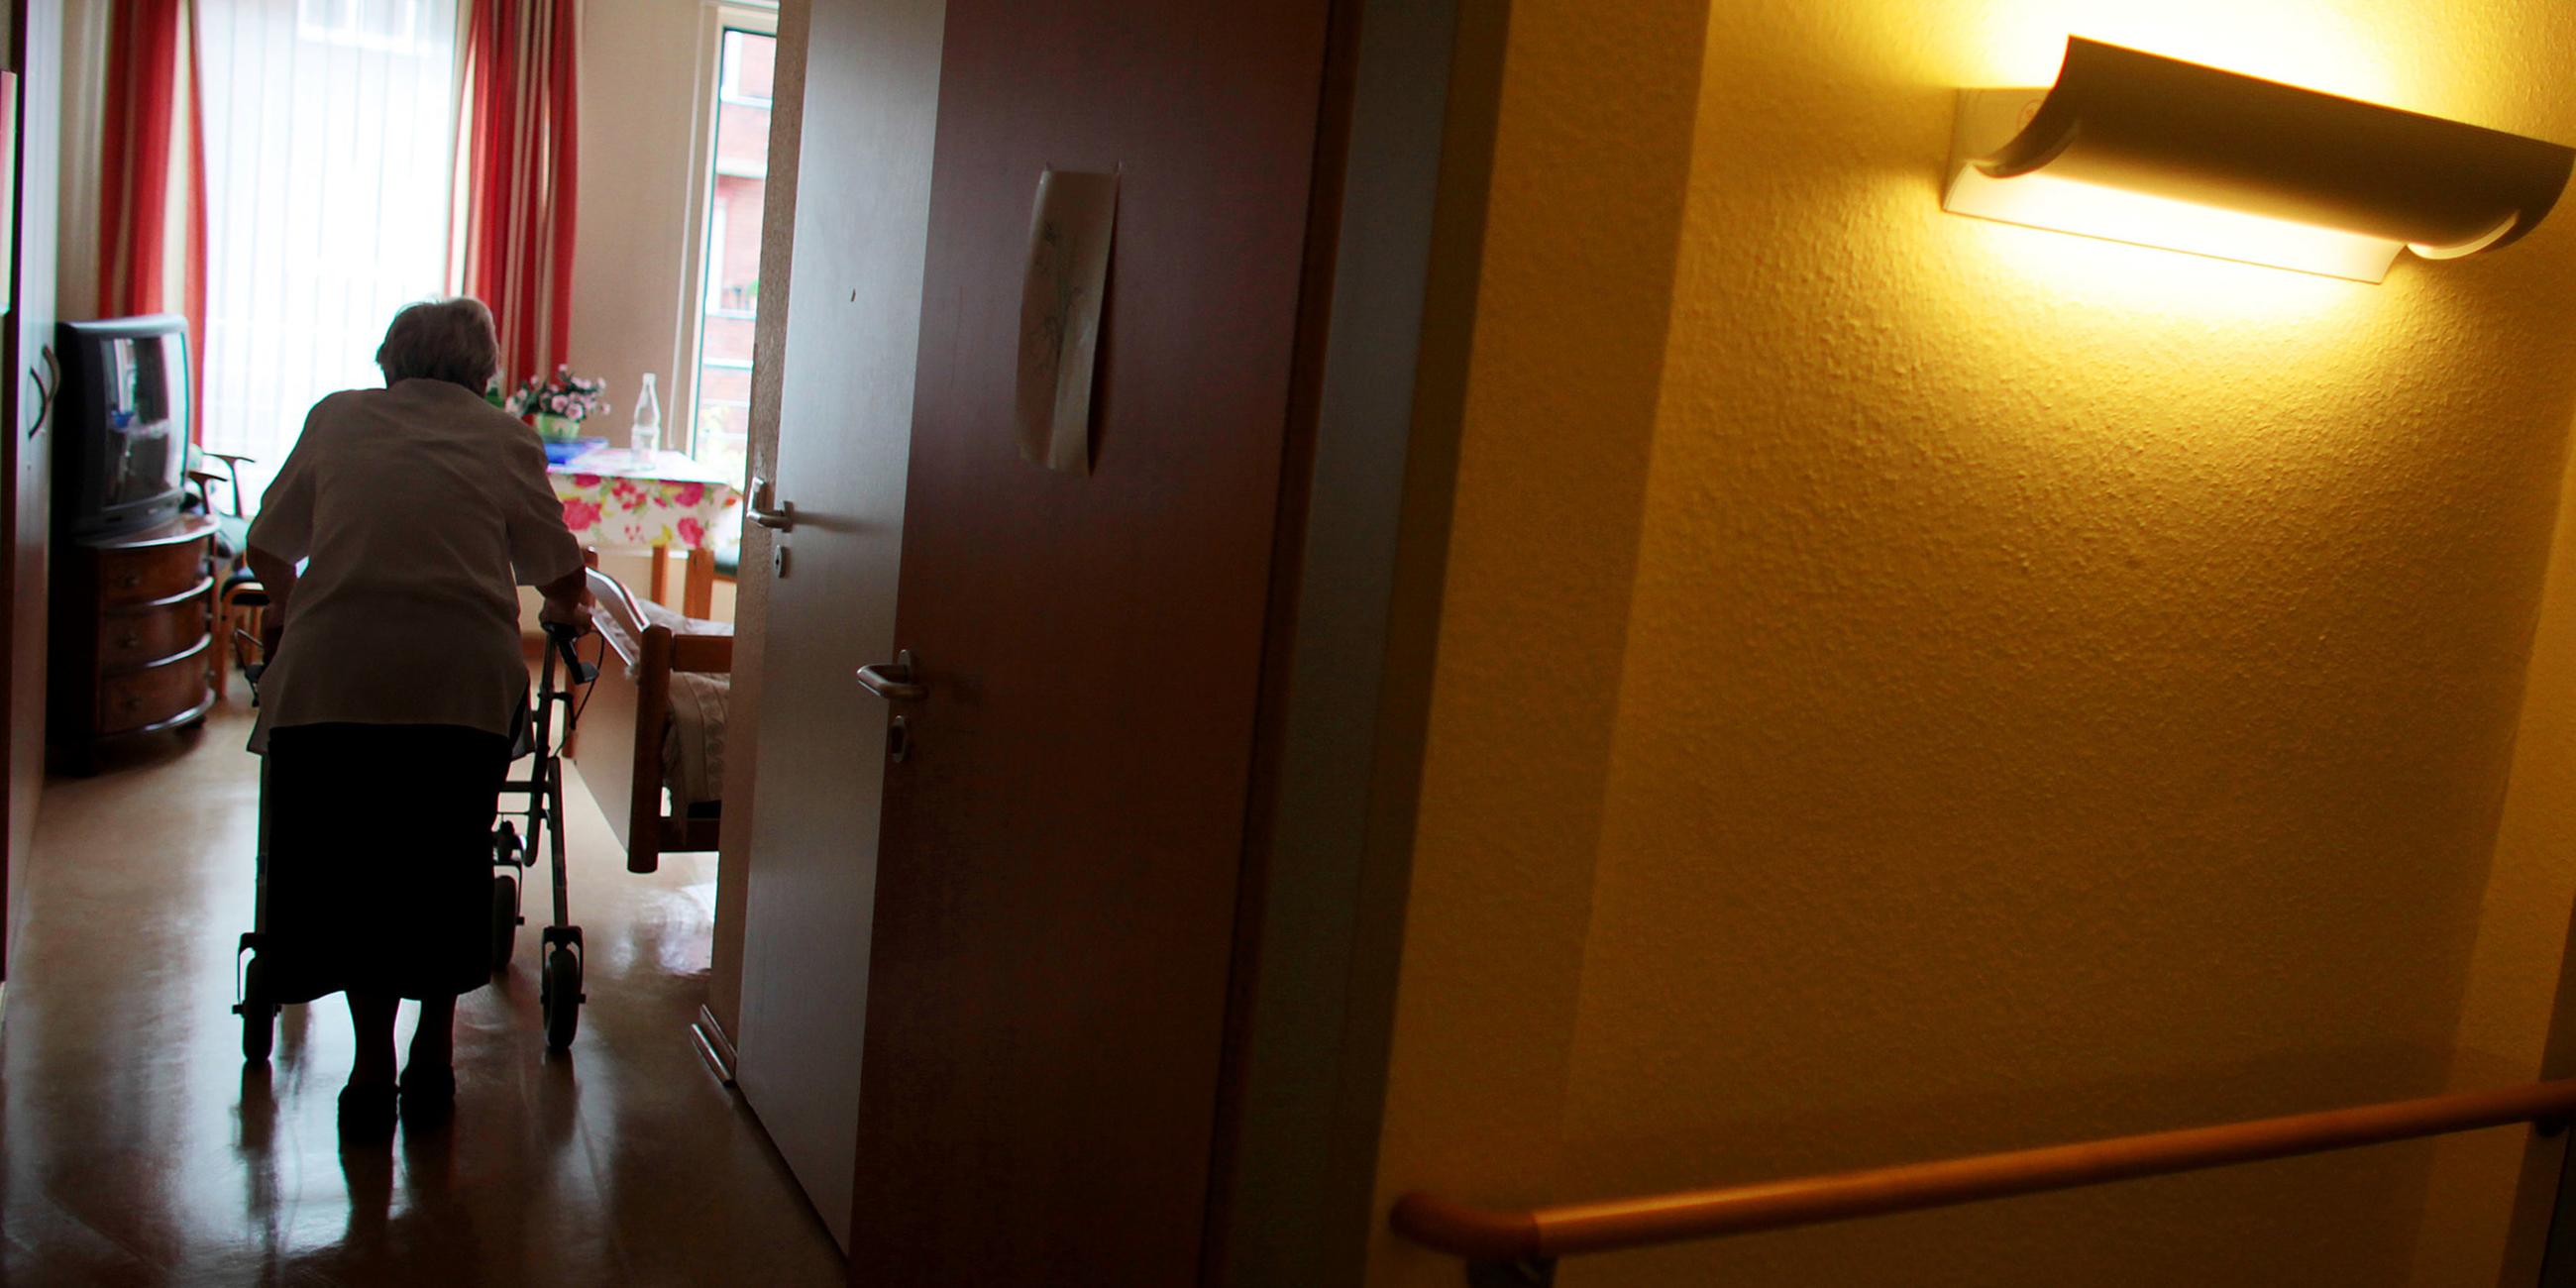 Archiv: Eine Rrau geht in einem Altenheim mit ihrem Rollator in ihr Zimmer